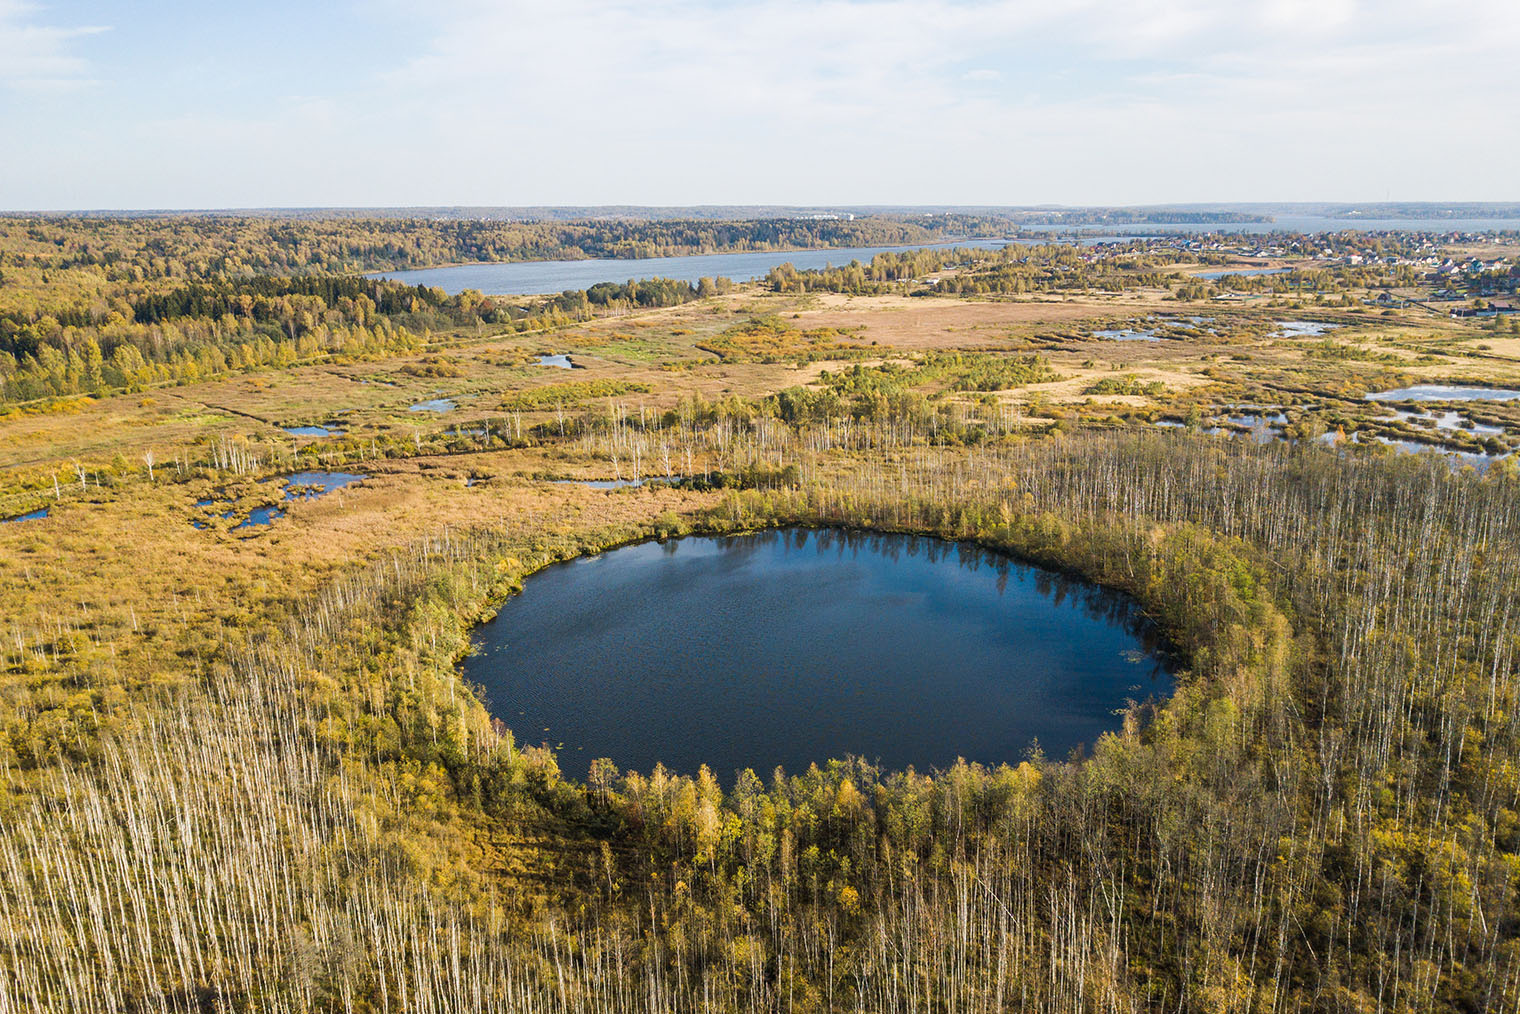 Еще ходят слухи, что озеро образовалось и приобрело круглую форму, потому что сюда упал метеорит. Фотография: Crazy nook / Shutterstock